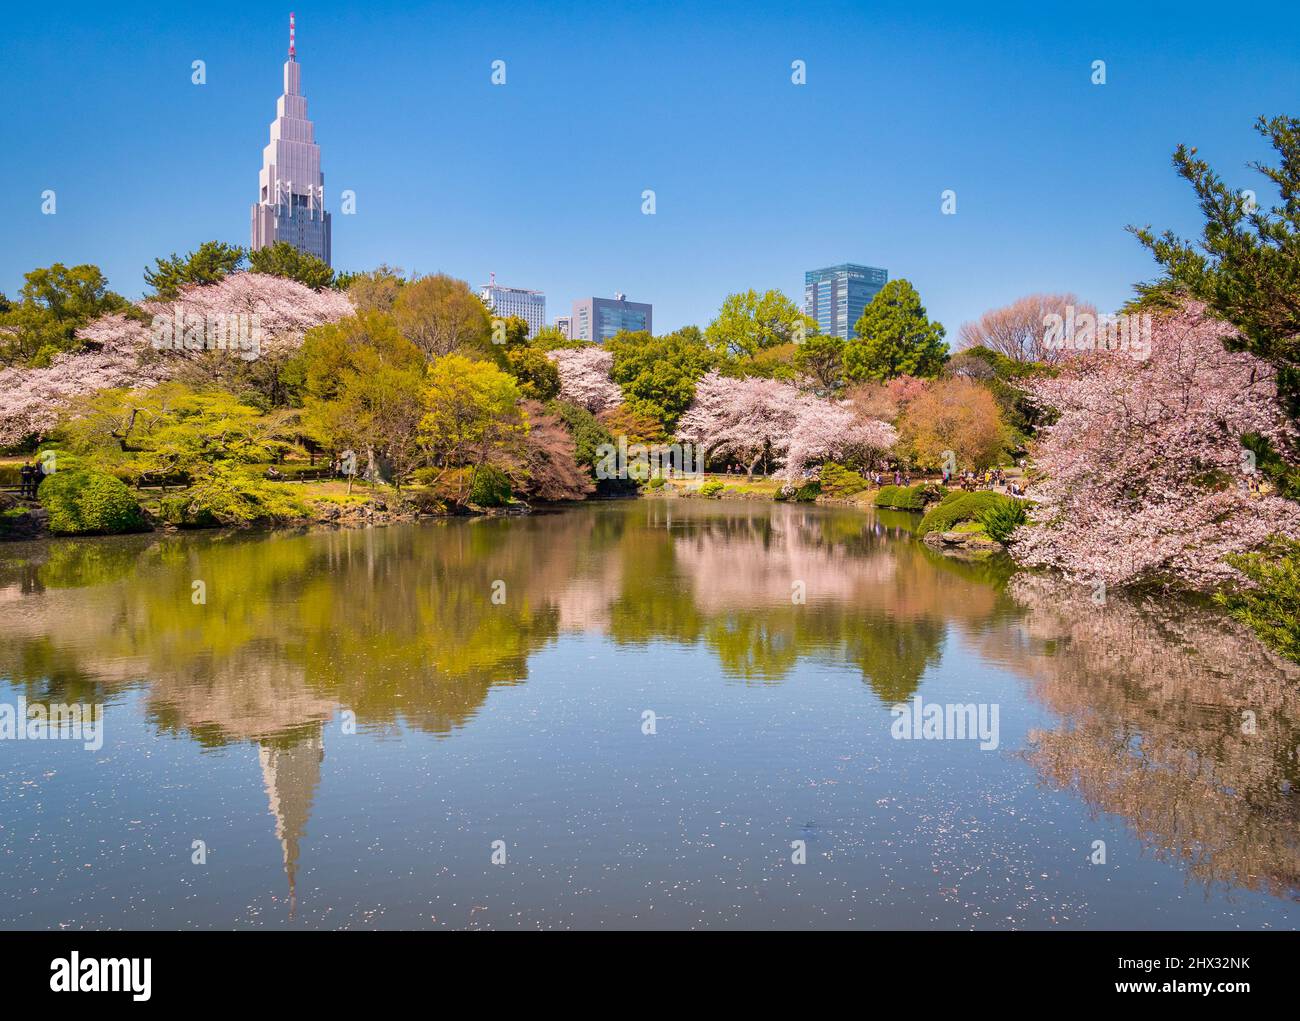 El 4 de abril de 2019: Tokio, Japón - Cherry Blossom y edificios de Shinjuku se refleja en el lago en Shinjuku Gyoen Jardín Nacional, Tokio. Foto de stock